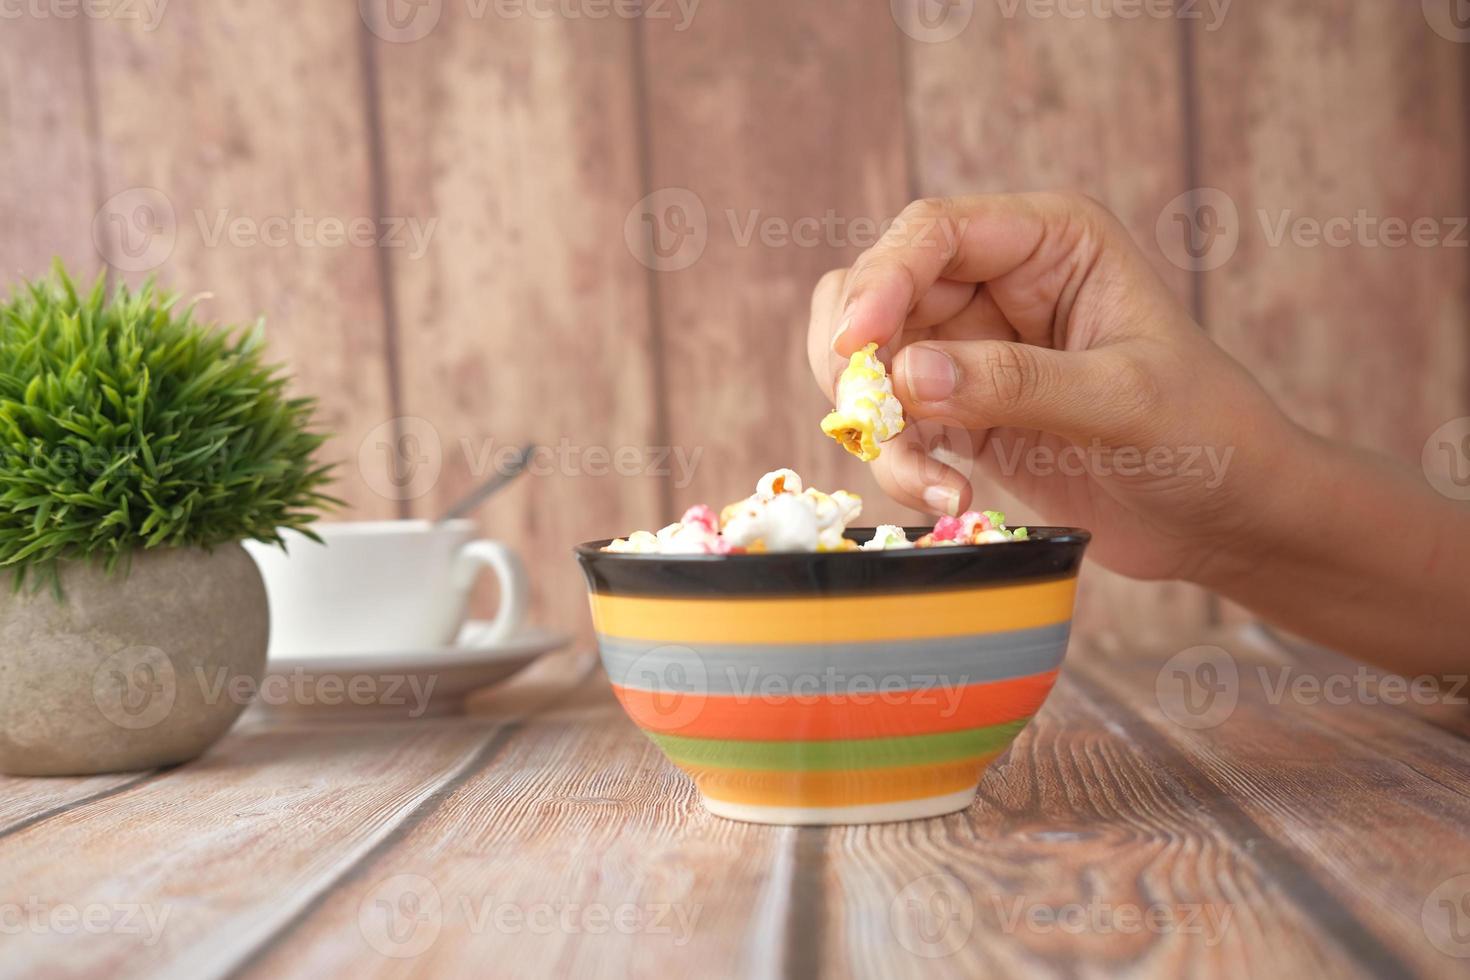 persona comiendo un tazón de palomitas de maíz colorido foto